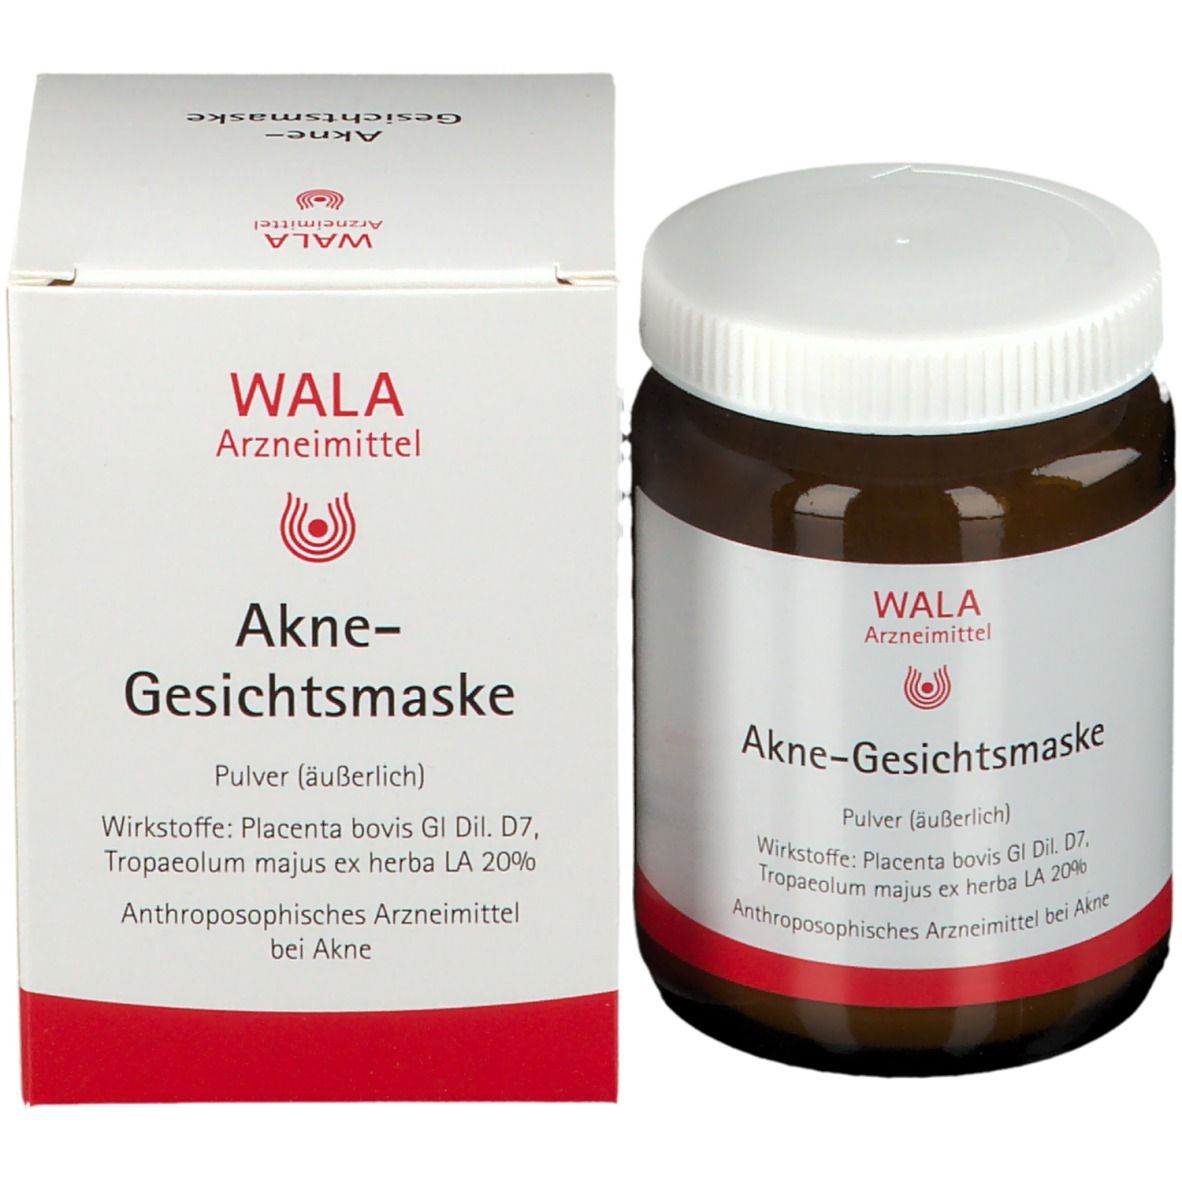 WALA® Akne-Gesichtsmaske